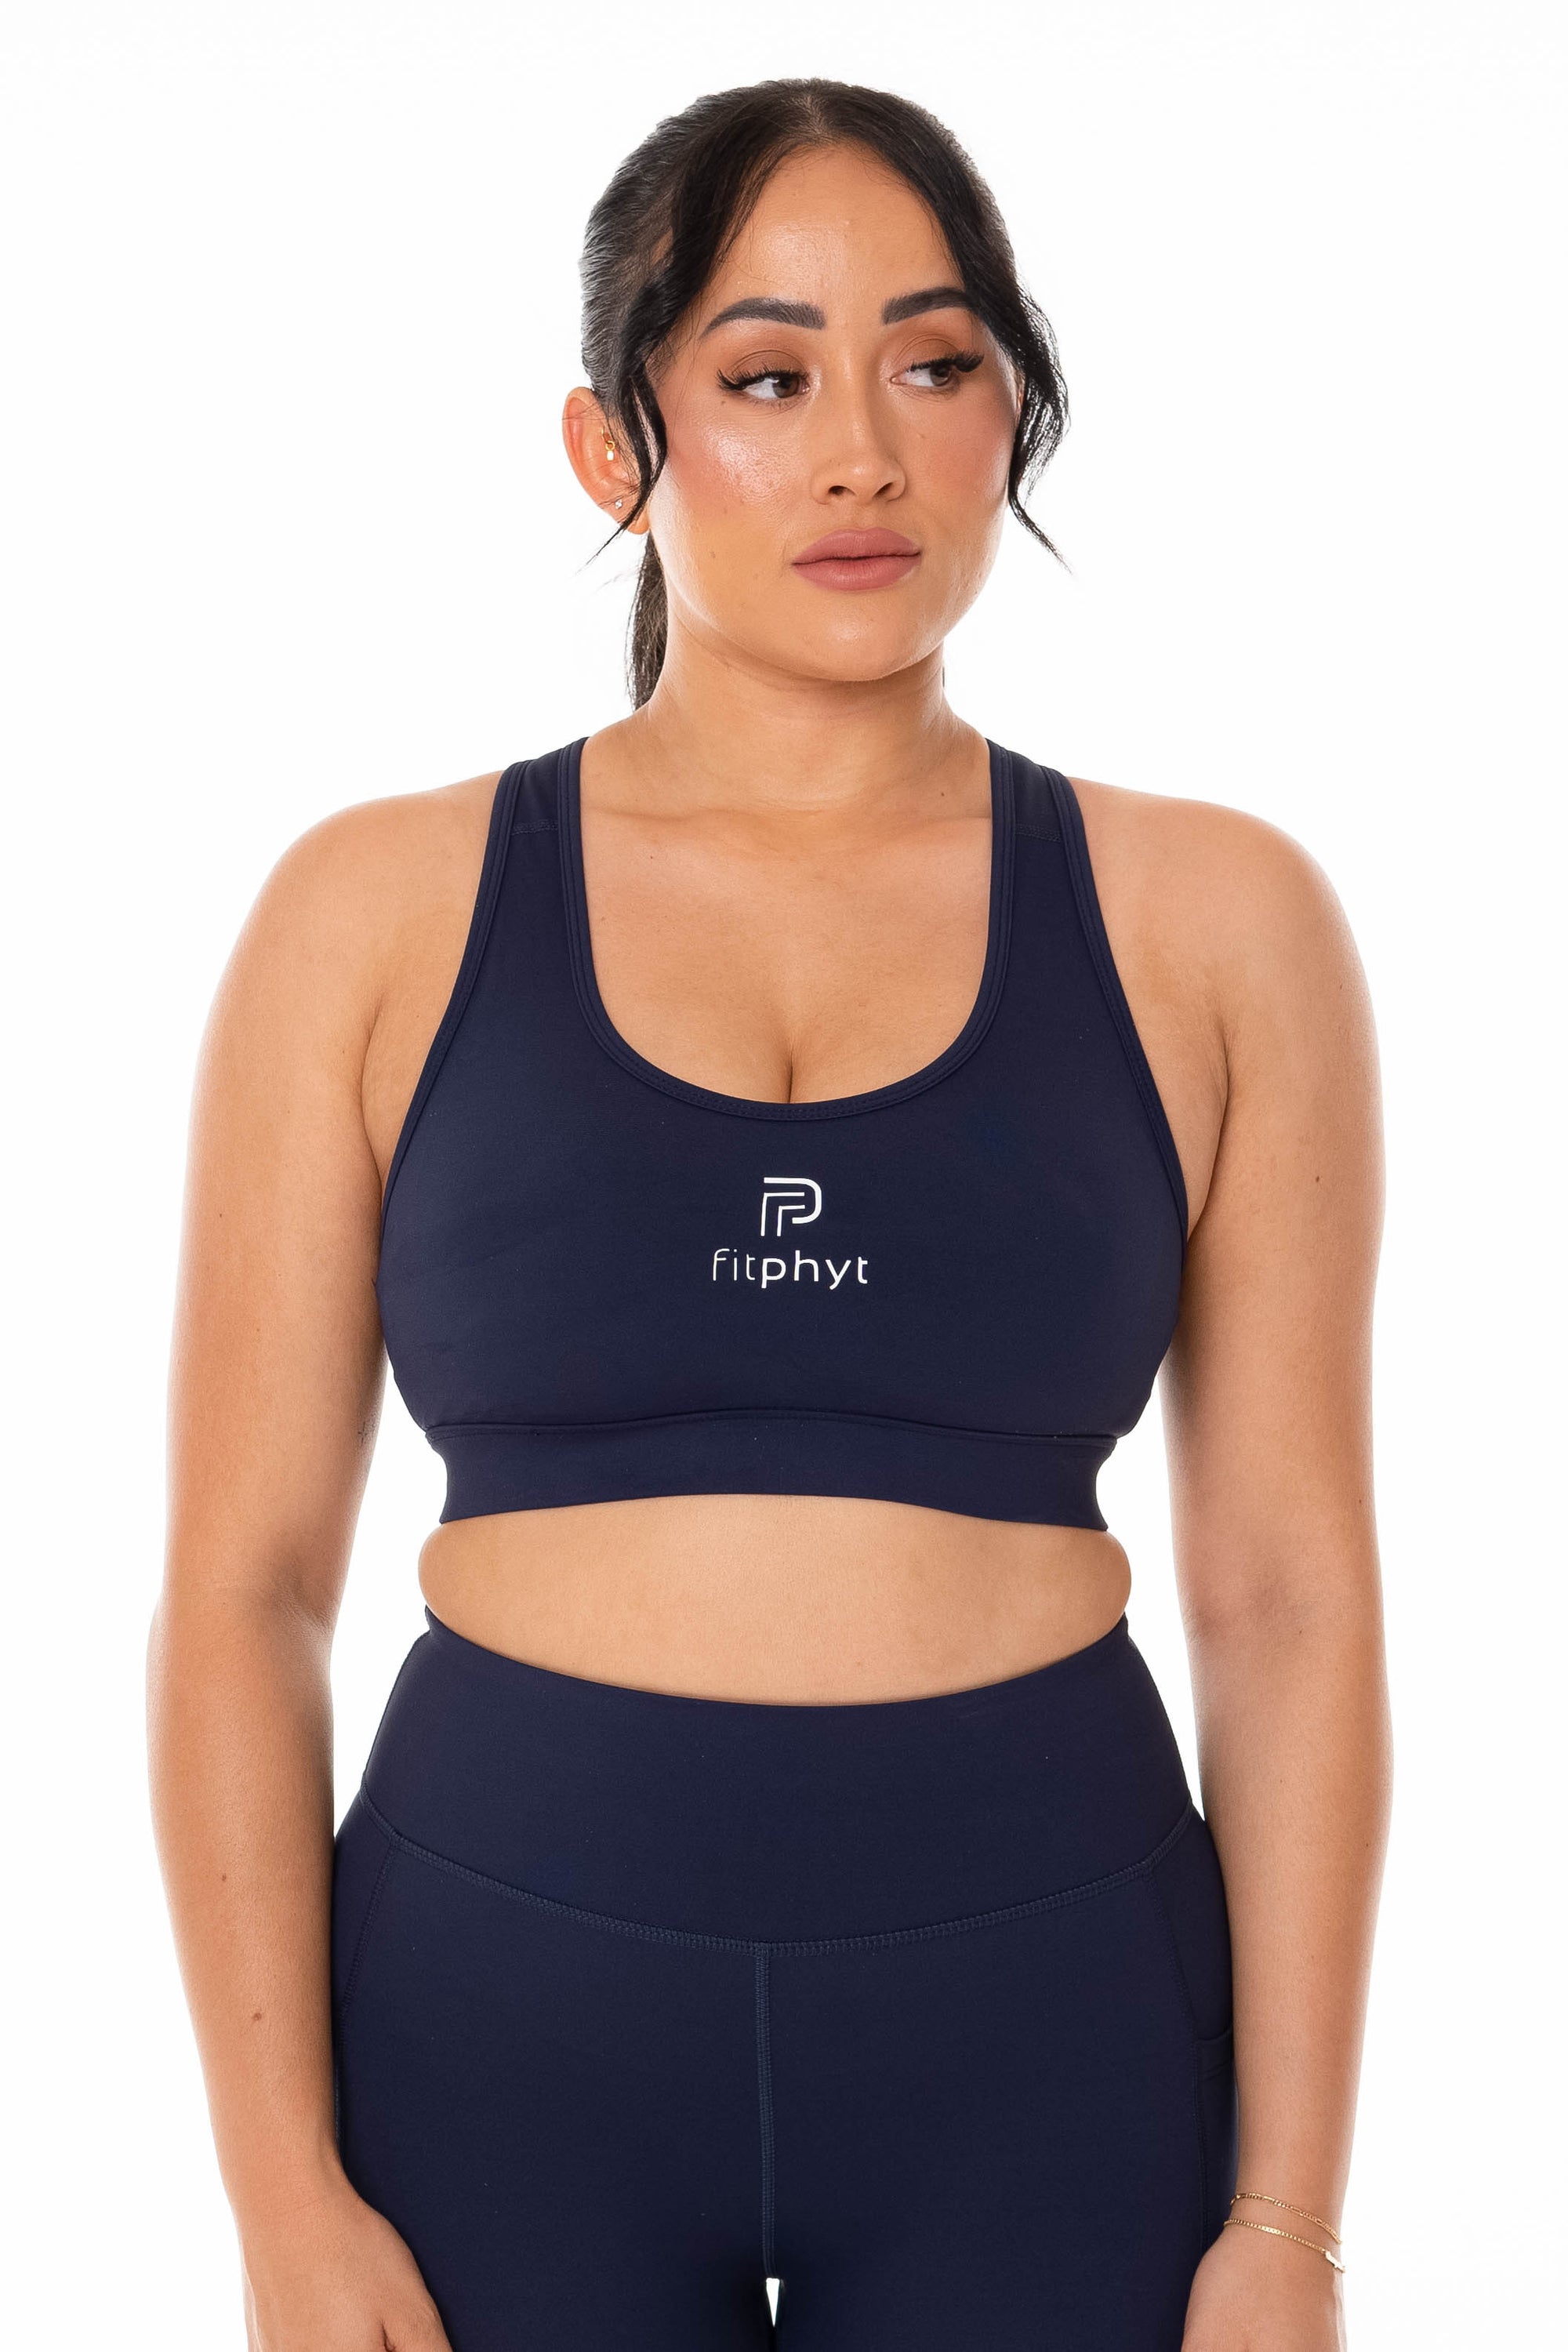 Pop Fit New black & sapphire Rose sports bra size XL